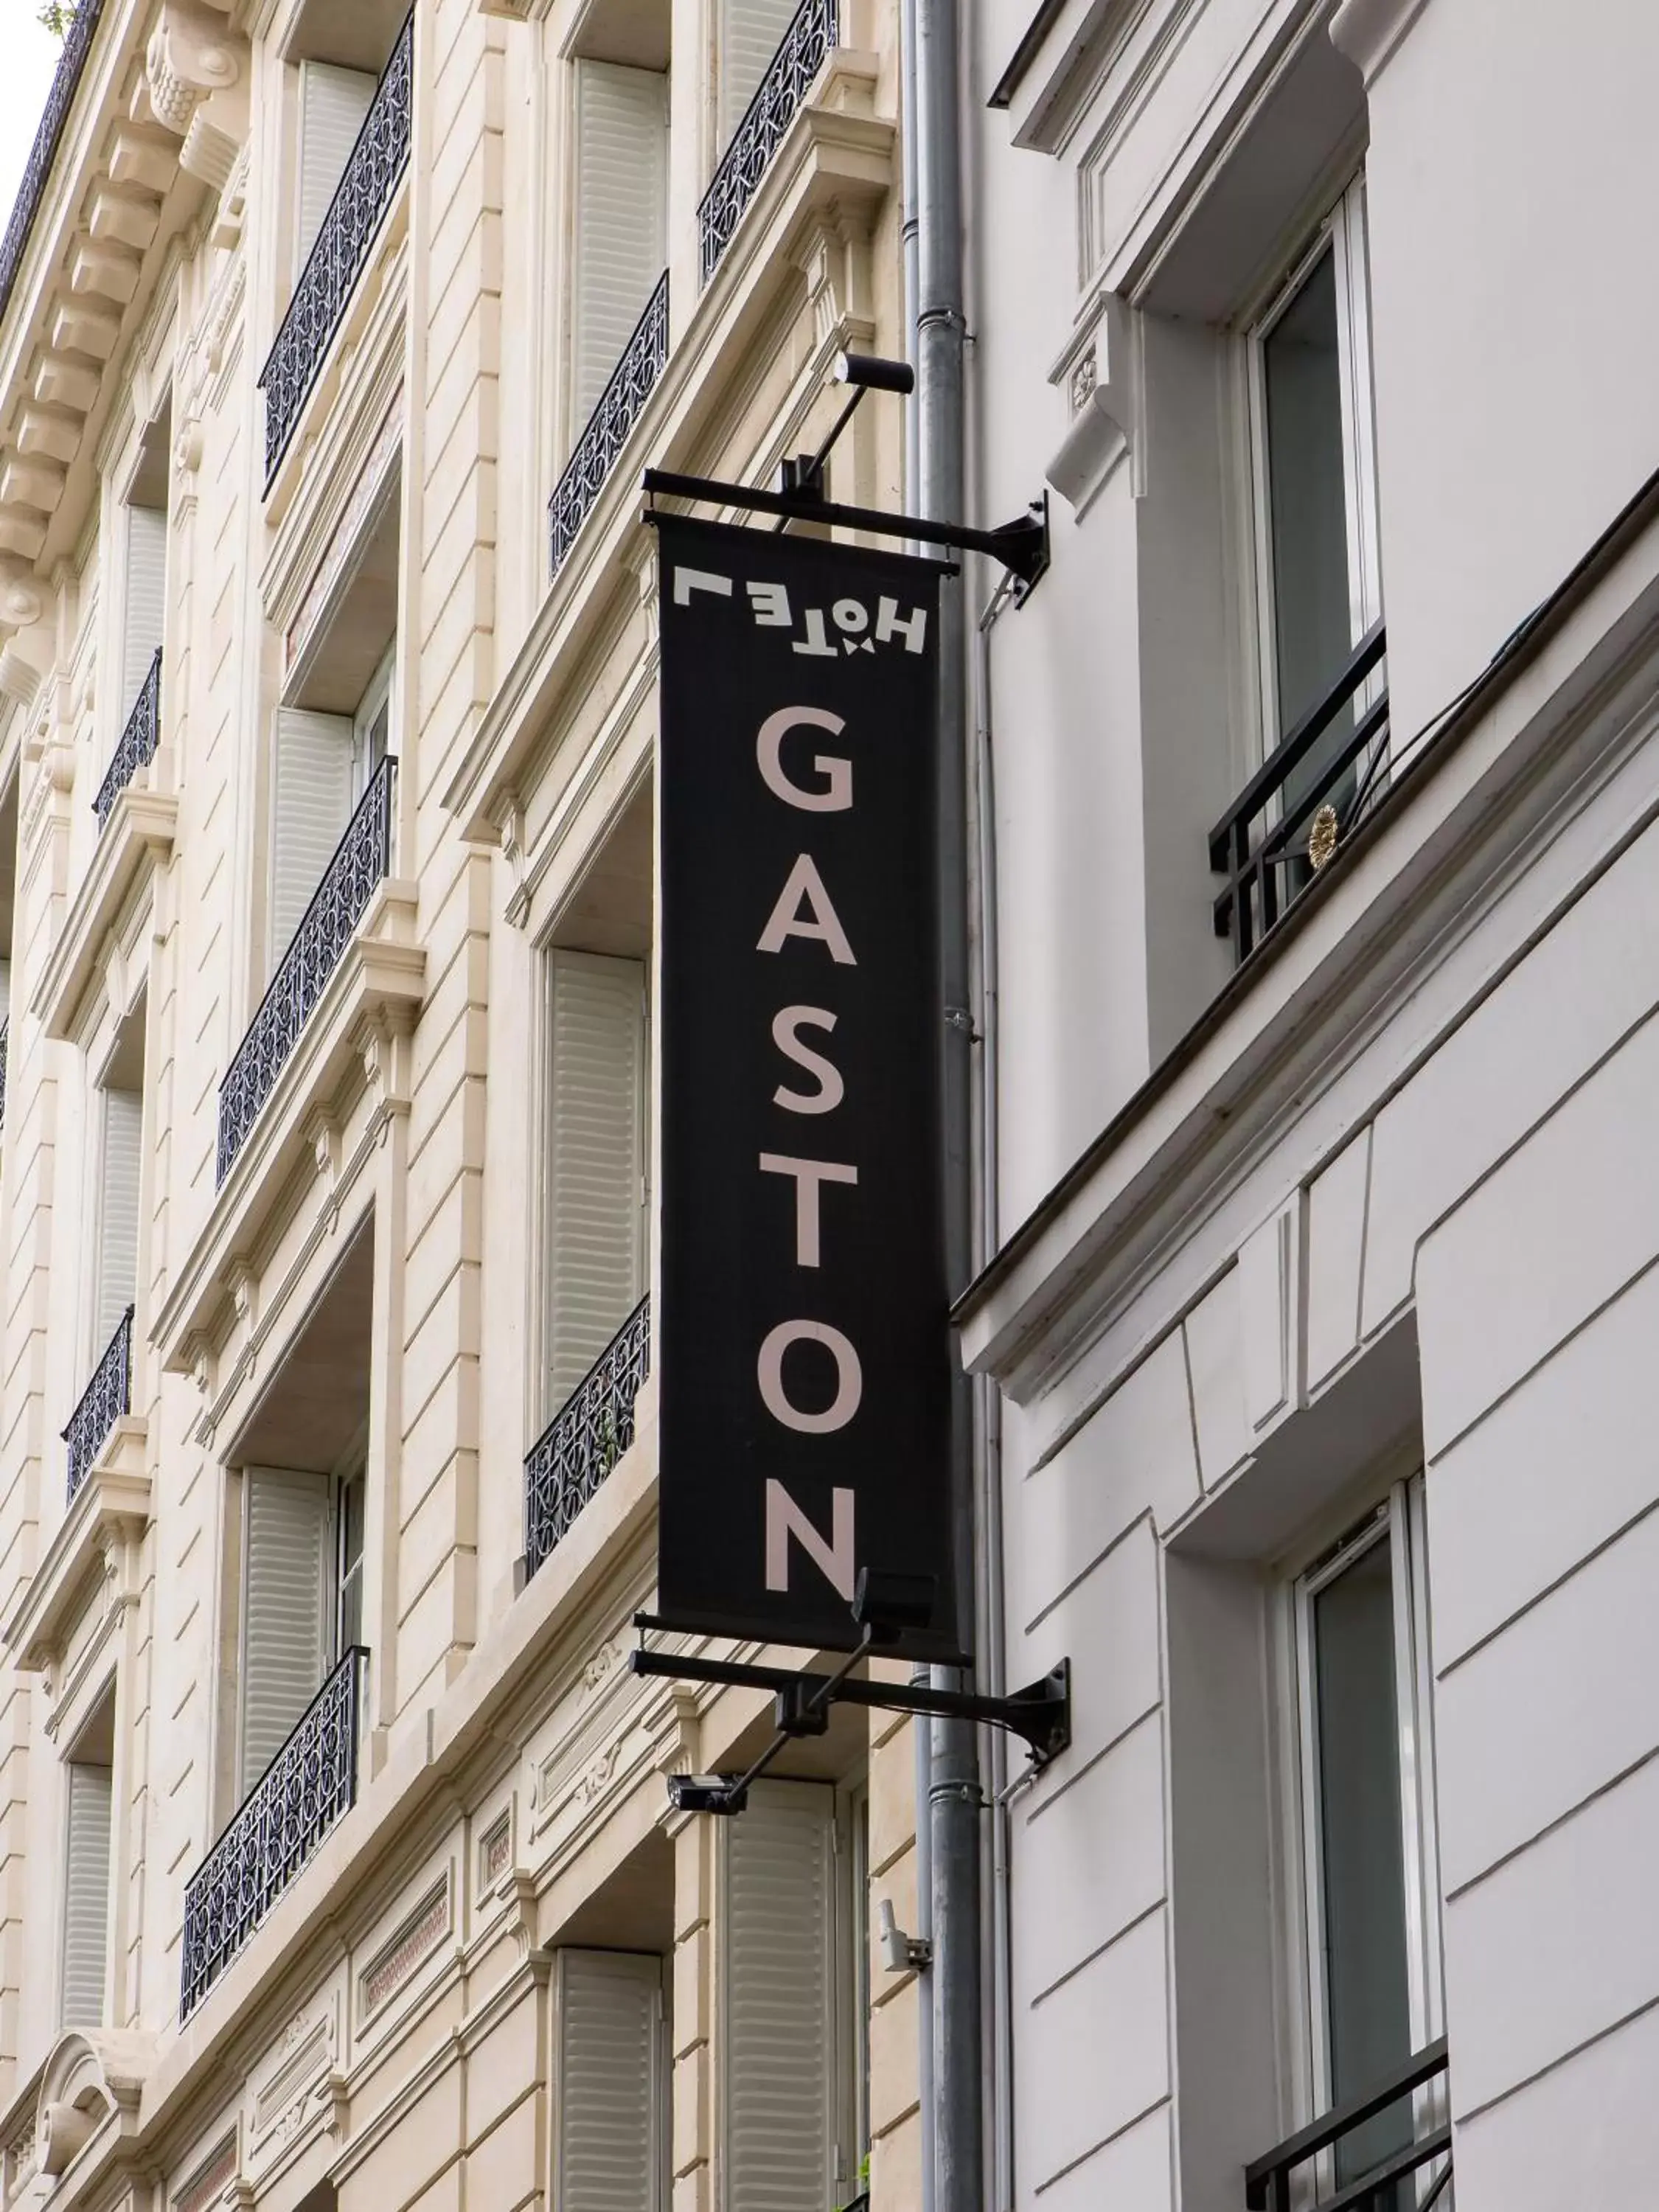 Facade/entrance in Hôtel Gaston